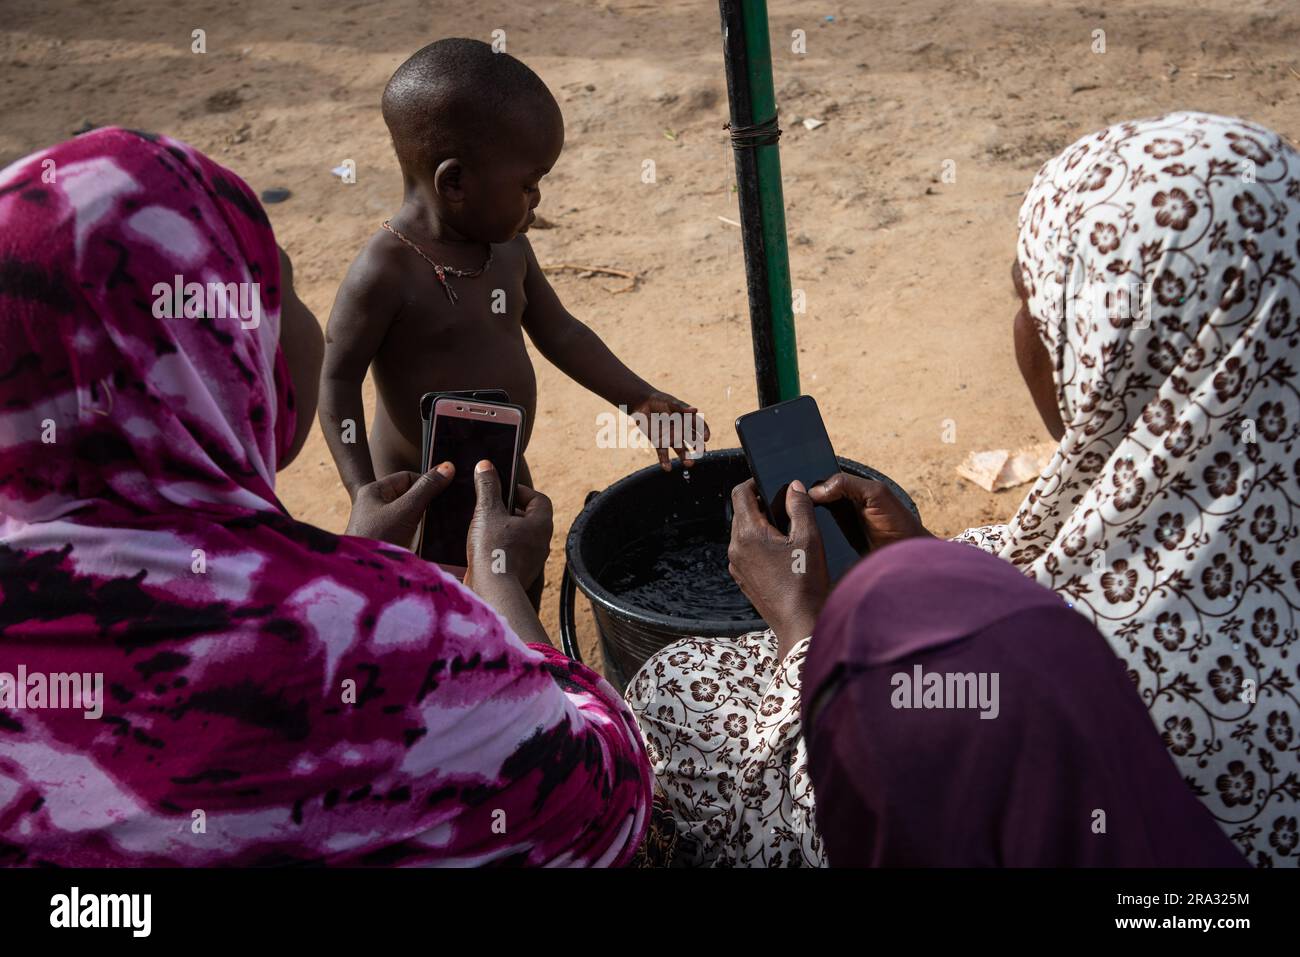 Nicolas Remene / Le Pictorium - Prepaid-Zähler und mobile Anwendung in Niger - 29/5/2020 - Niger / Niamey / Niamey - im Goudel Maourey-Bezirk Niamey in Niger wurden „intelligente“ Wasserzähler installiert, die es jeder Familie ermöglichen, ihren Wasserverbrauch sofort zu bezahlen. Mit einem Mobiltelefon und einer Anwendung. Diese Art von Prepaid-Zähler ermöglicht es den Einwohnern, ihren Verbrauch nach ihrem Einkommen zu regulieren. Dies ermöglicht den Zugang zu Trinkwasser zu Hause zu geringeren Kosten, wobei das System der Vorauszahlung an die unregelmäßigen Einkommen eines großen Teils der Einnahmen angepasst ist Stockfoto